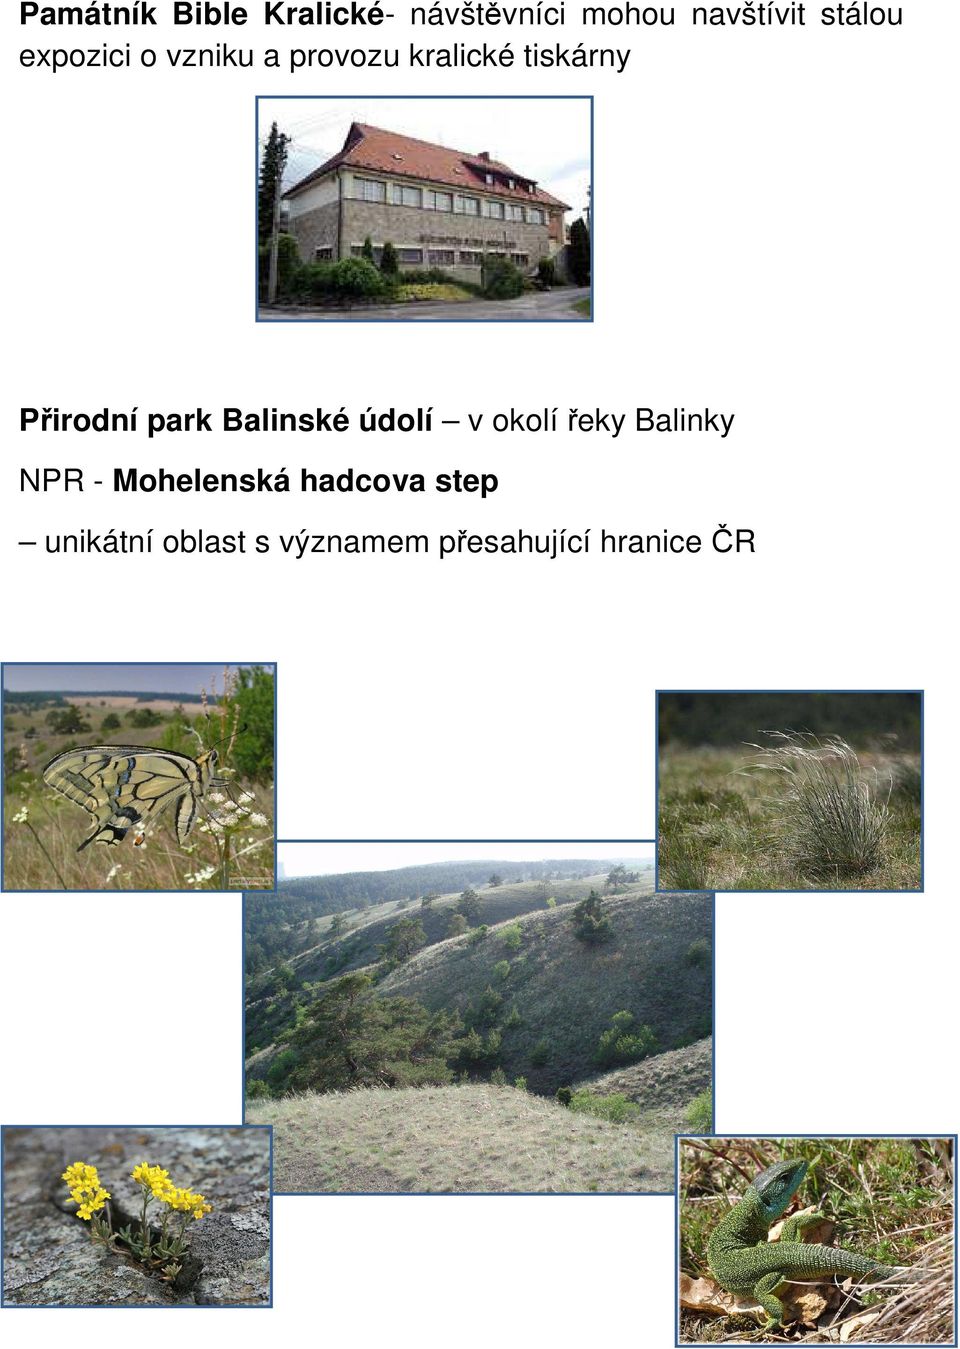 Přirodní park Balinské údolí v okolí řeky Balinky NPR -